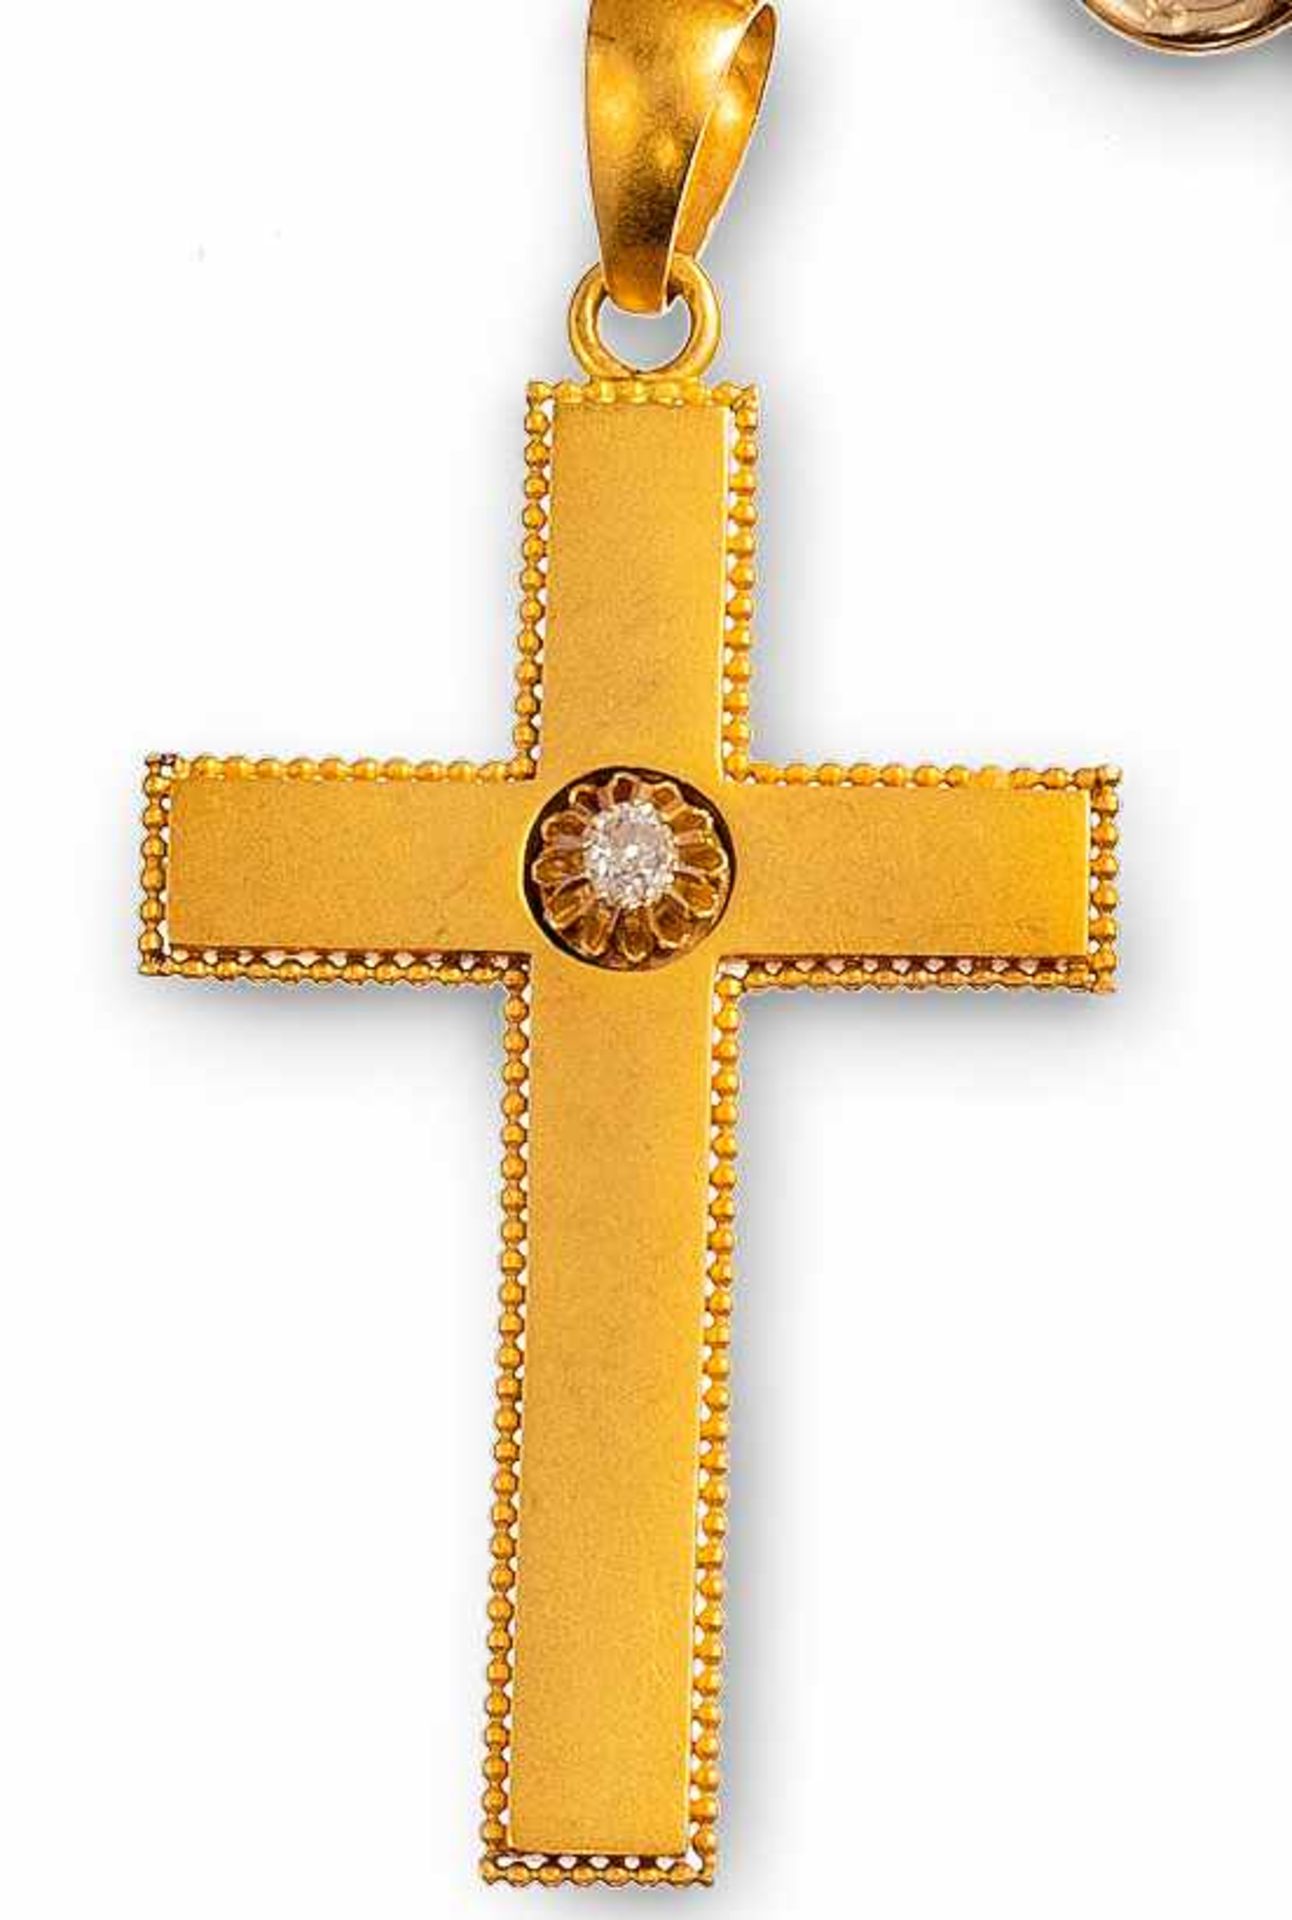 Goldenes KonfirmationskreuzWien, um 1880/1900Satiniert mit zartem Perlfries. Im Zentrum kl. Brillant